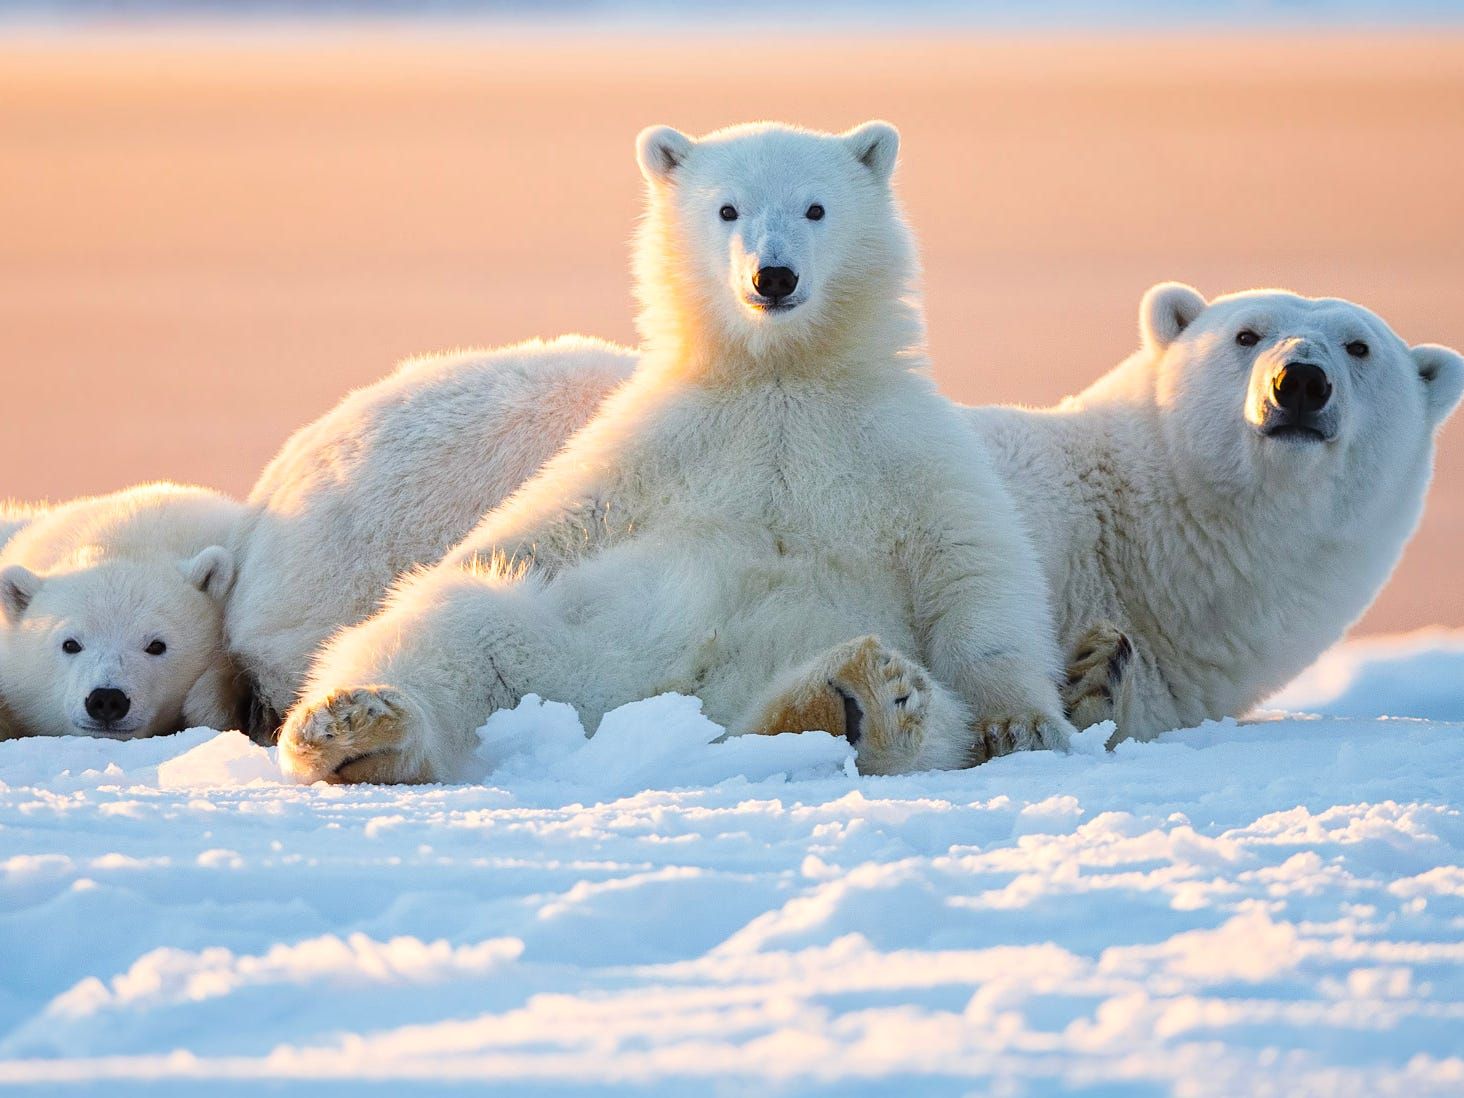 Tác phẩm nhiếp ảnh gấu Bắc cực là những tác phẩm nghệ thuật tuyệt vời, chứa đựng sự nghiêng mình của nhiếp ảnh gia với thiên nhiên hoang dã và những sinh vật độc đáo. Được chụp từ những khoảnh khắc đẹp nhất của loài gấu trắng, tác phẩm này sẽ khiến bạn ngợi khen và trầm trồ trước vẻ đẹp khó tả của thiên nhiên.